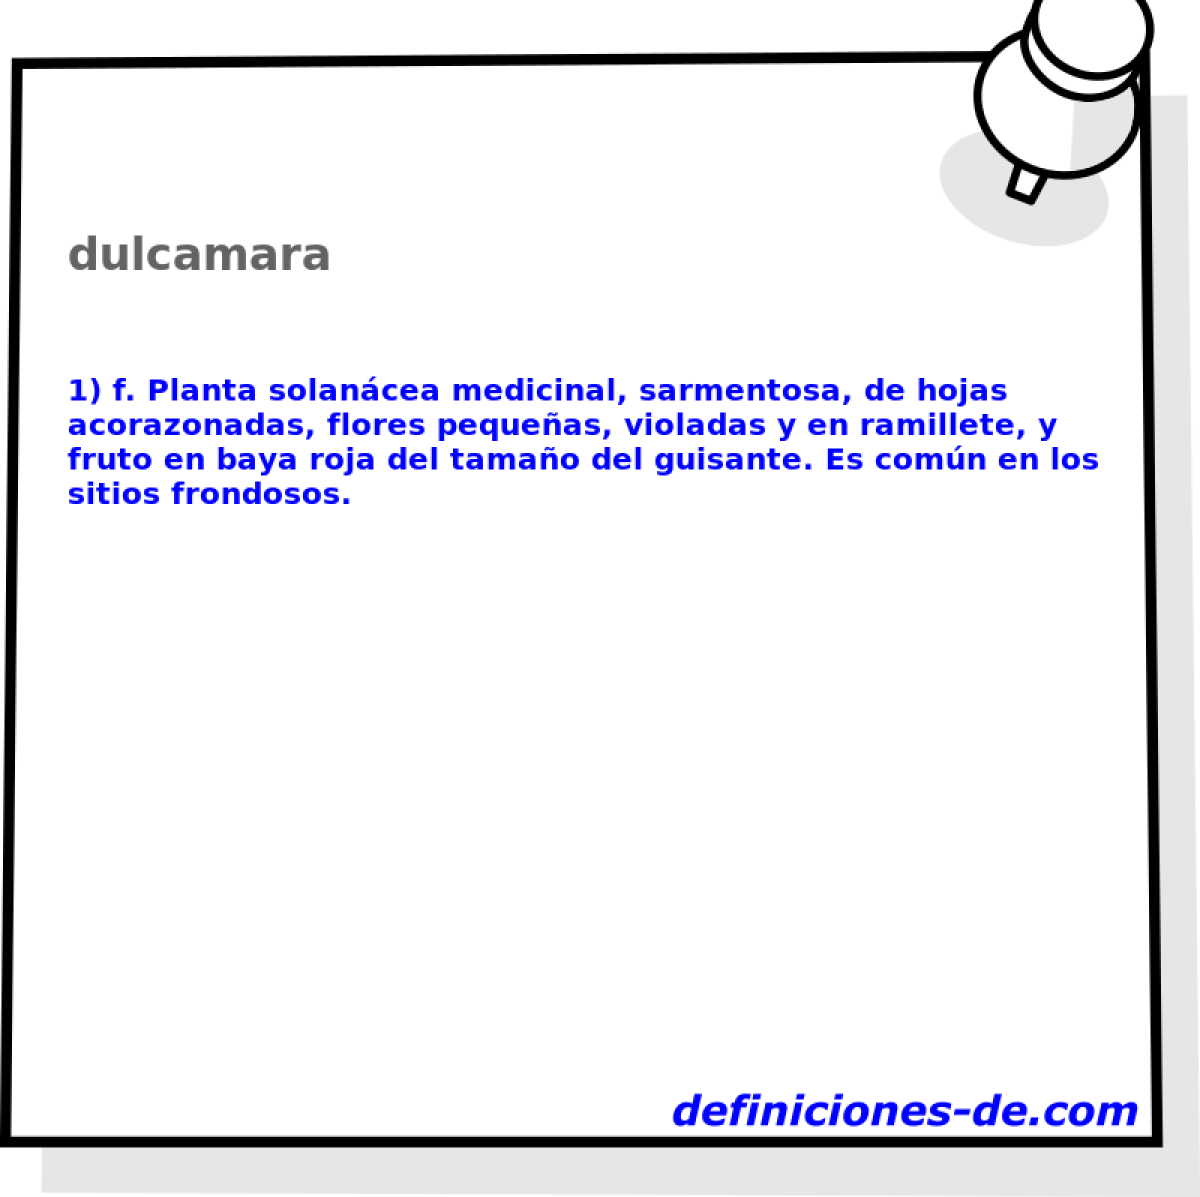 dulcamara 